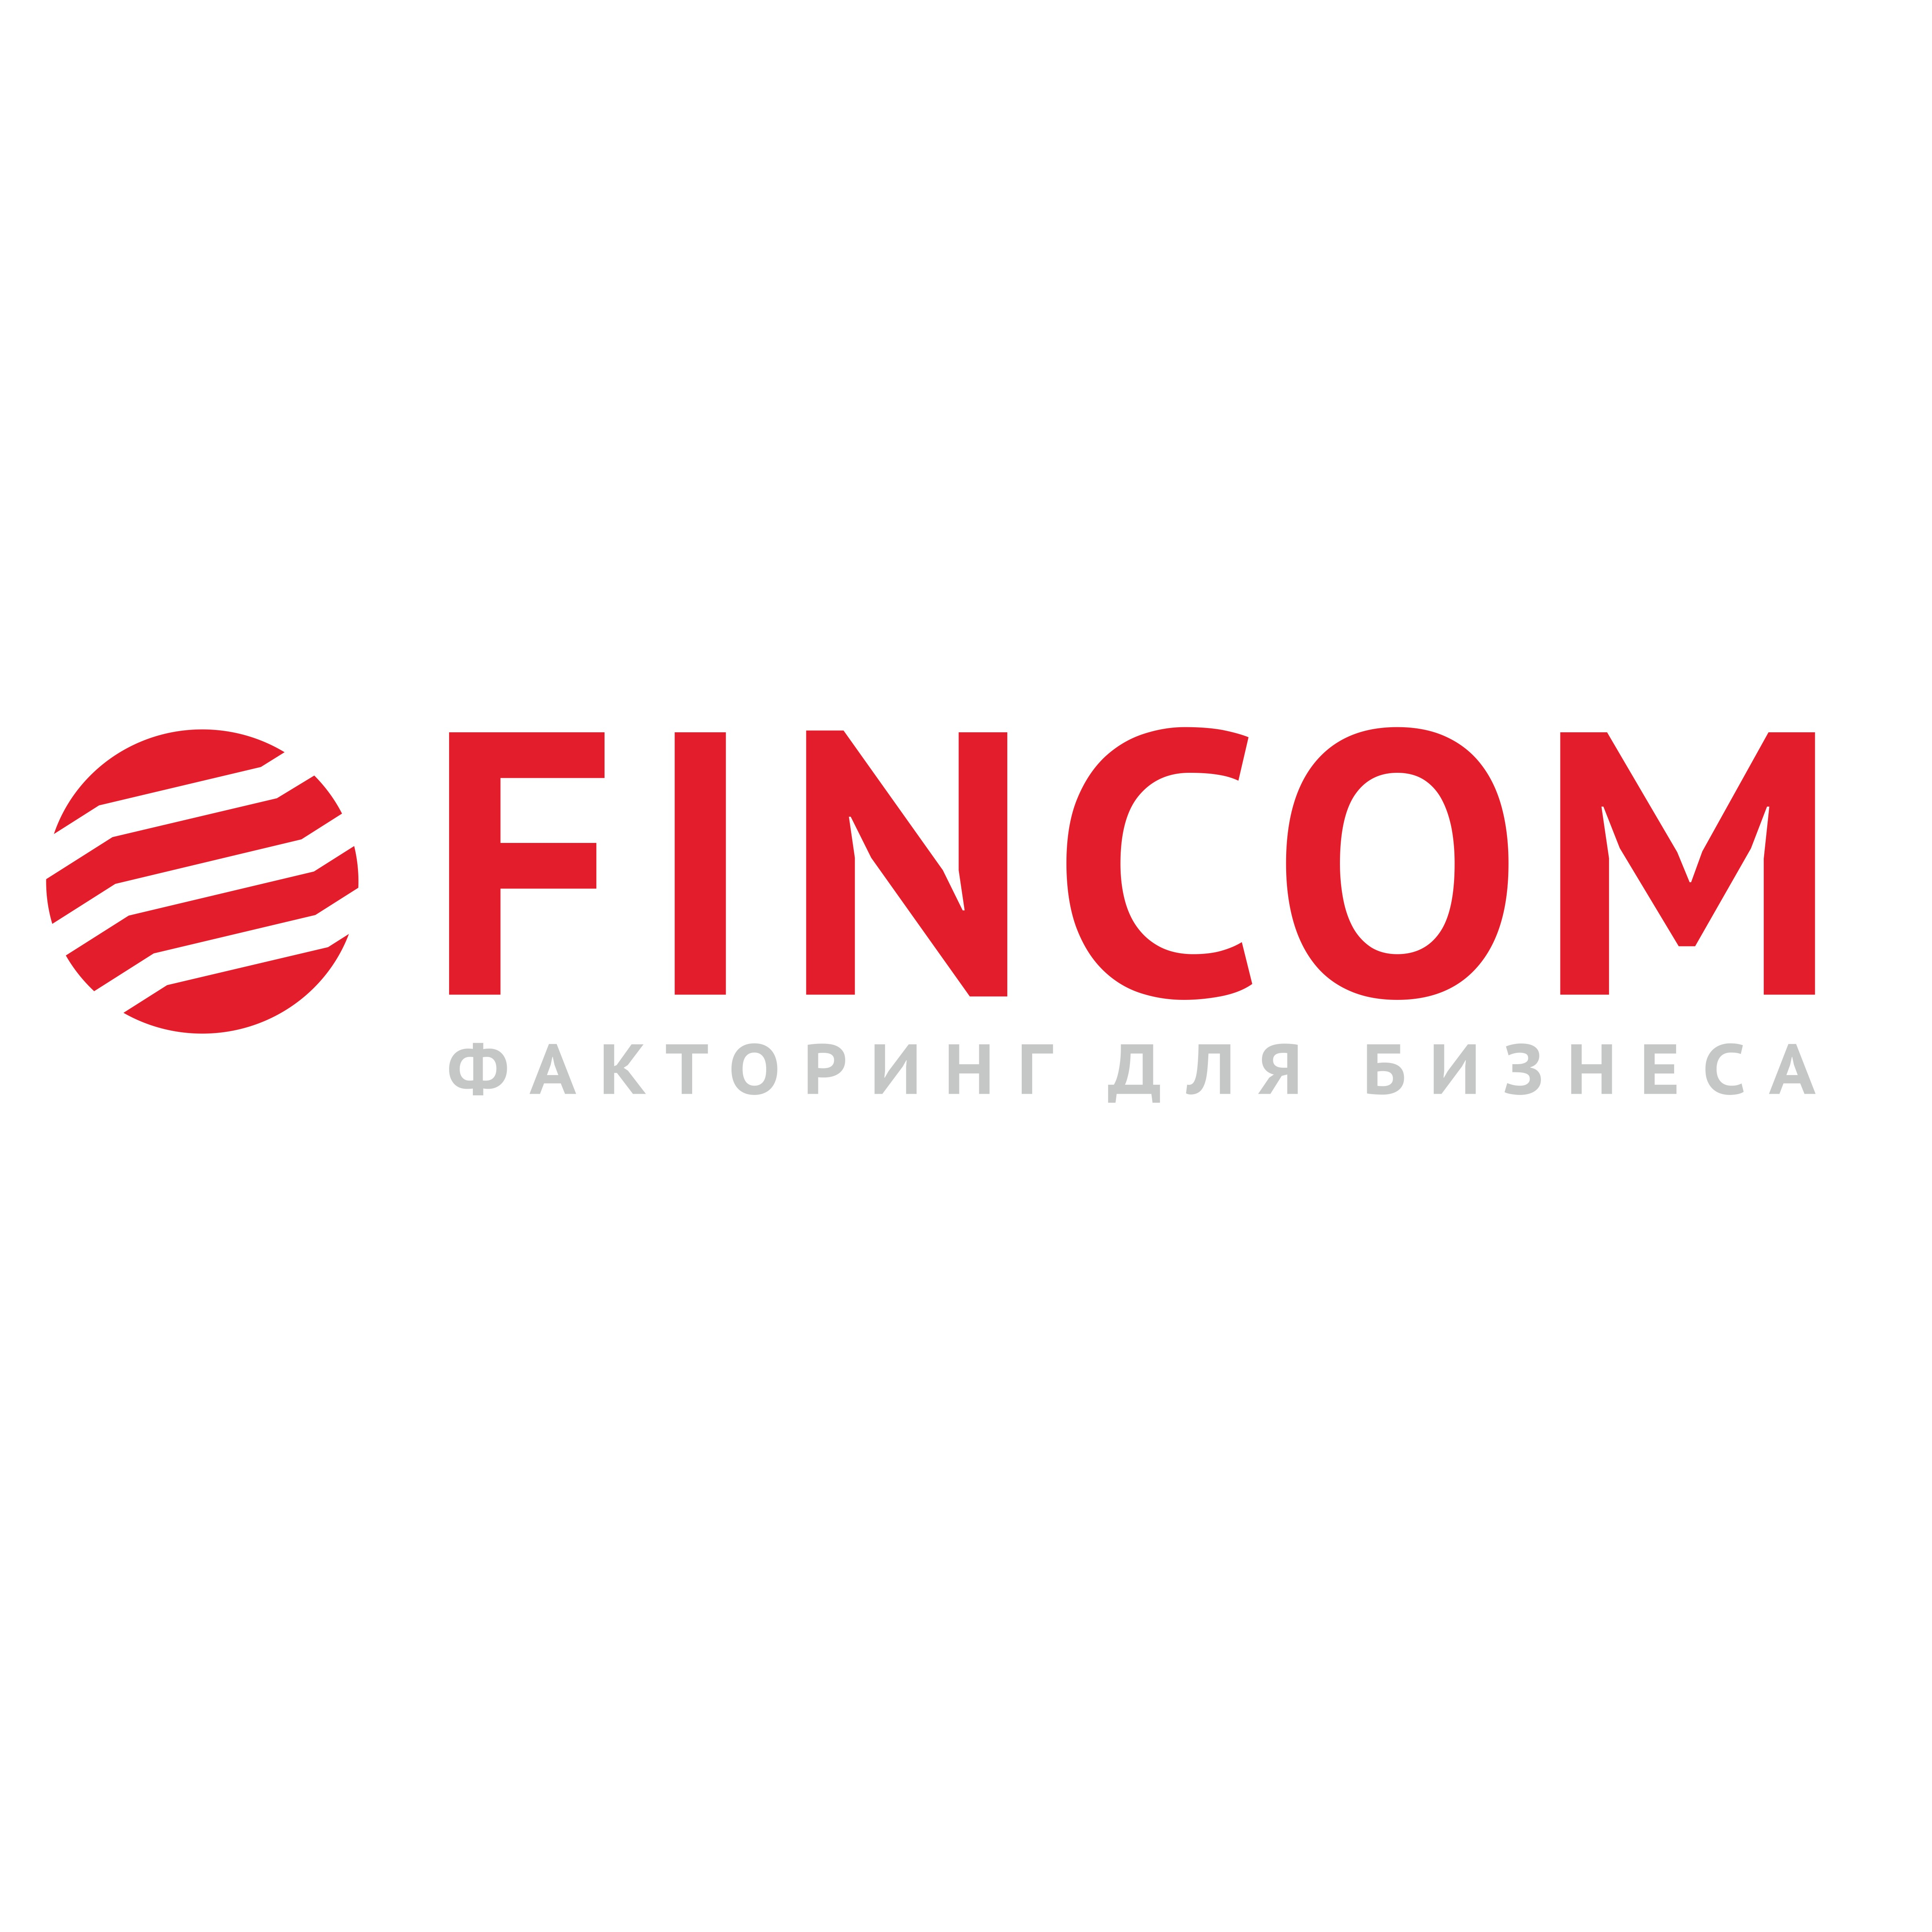 Финком. Компания "Финком". Факторинговая компания Финком. Fincom Group логотип.